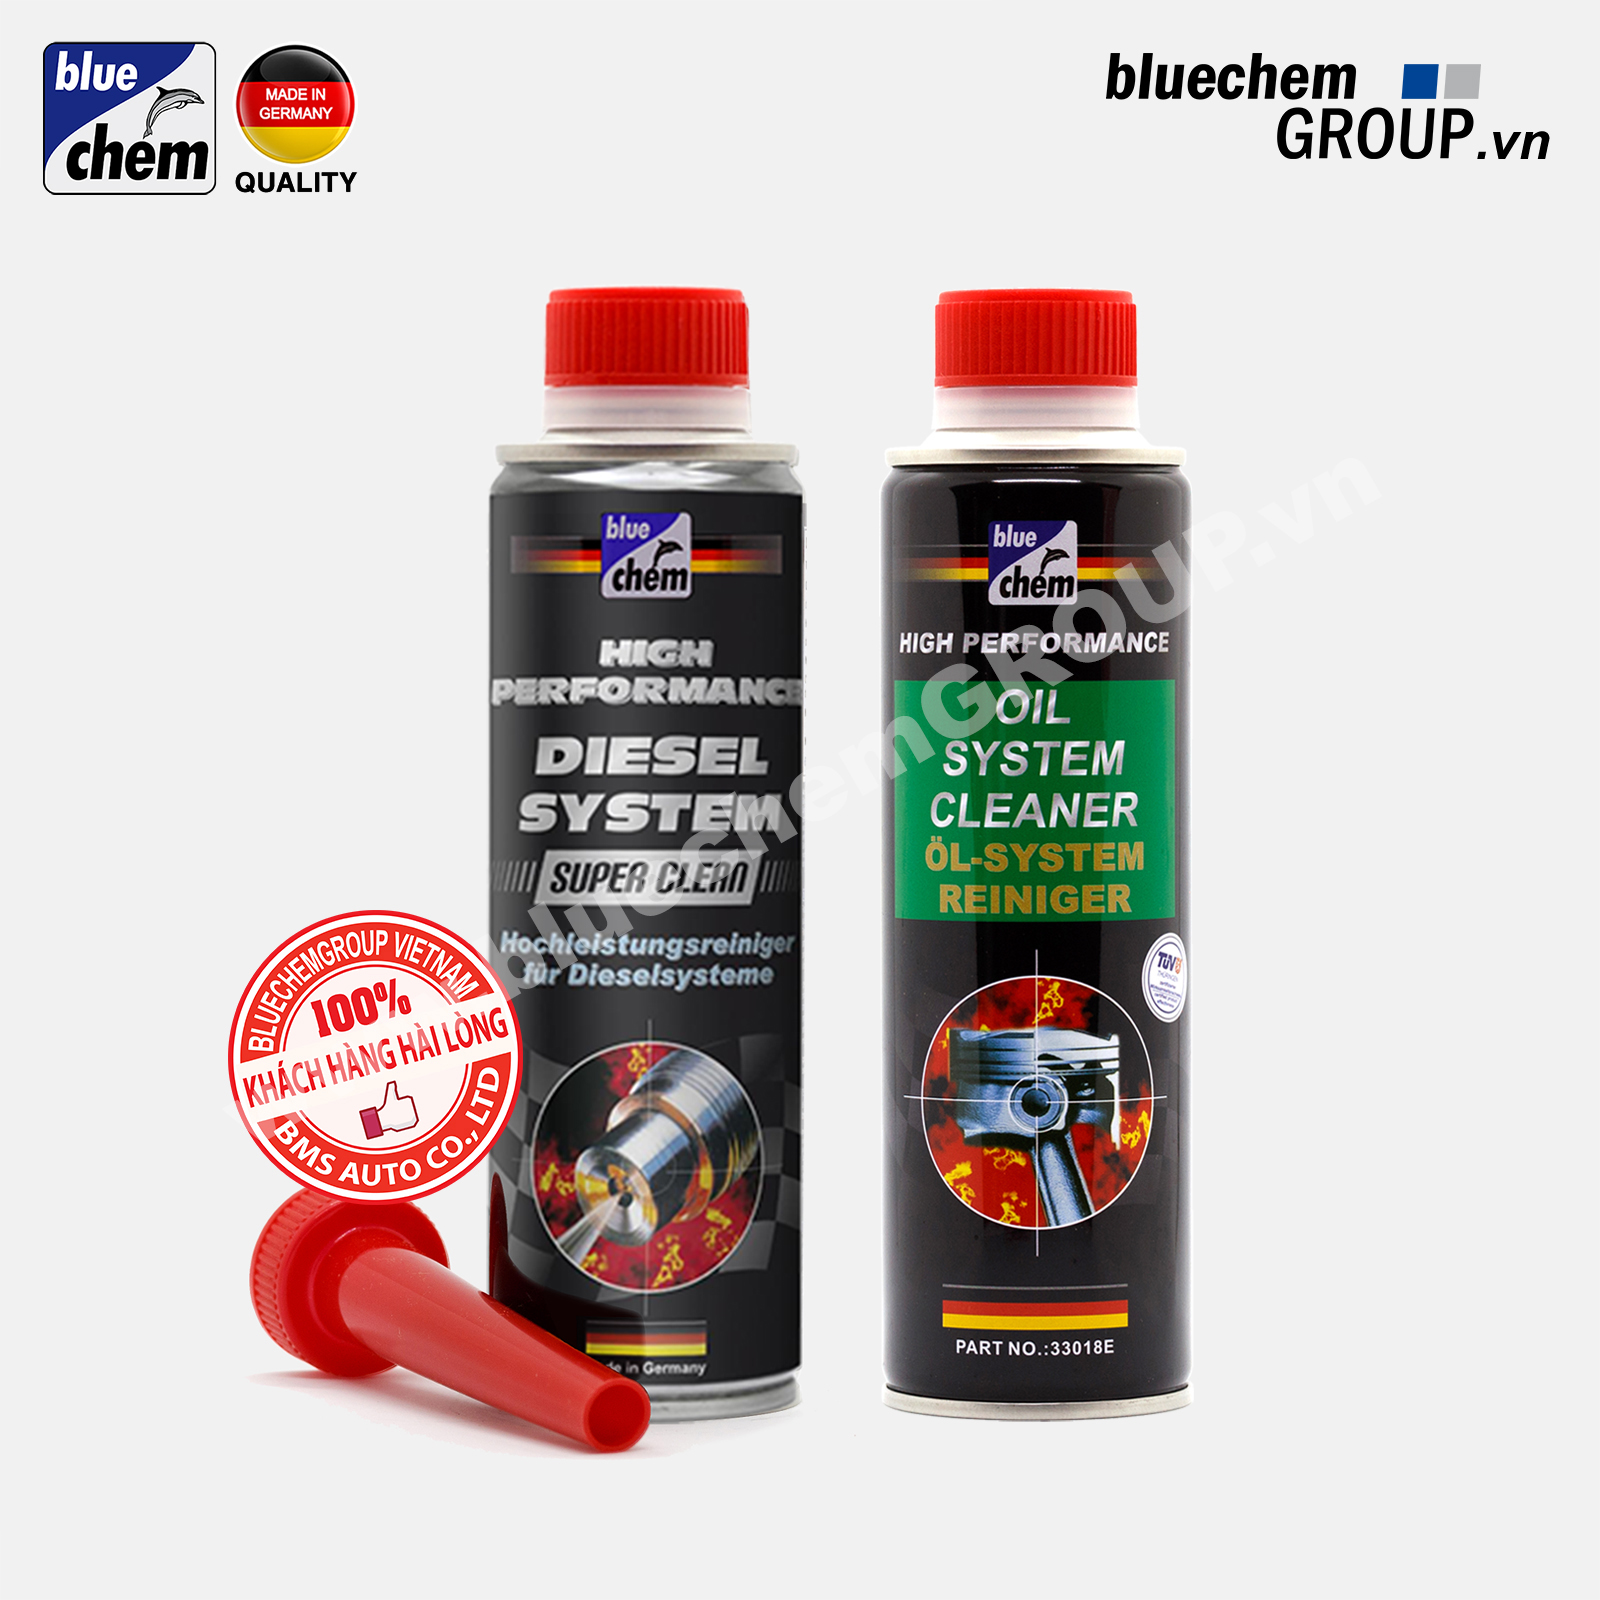 Cặp sản phẩm Bluechem Làm sạch Động cơ Ô tô Diesel hiện đại (Couple CR-Diesel Engine Cleaner)